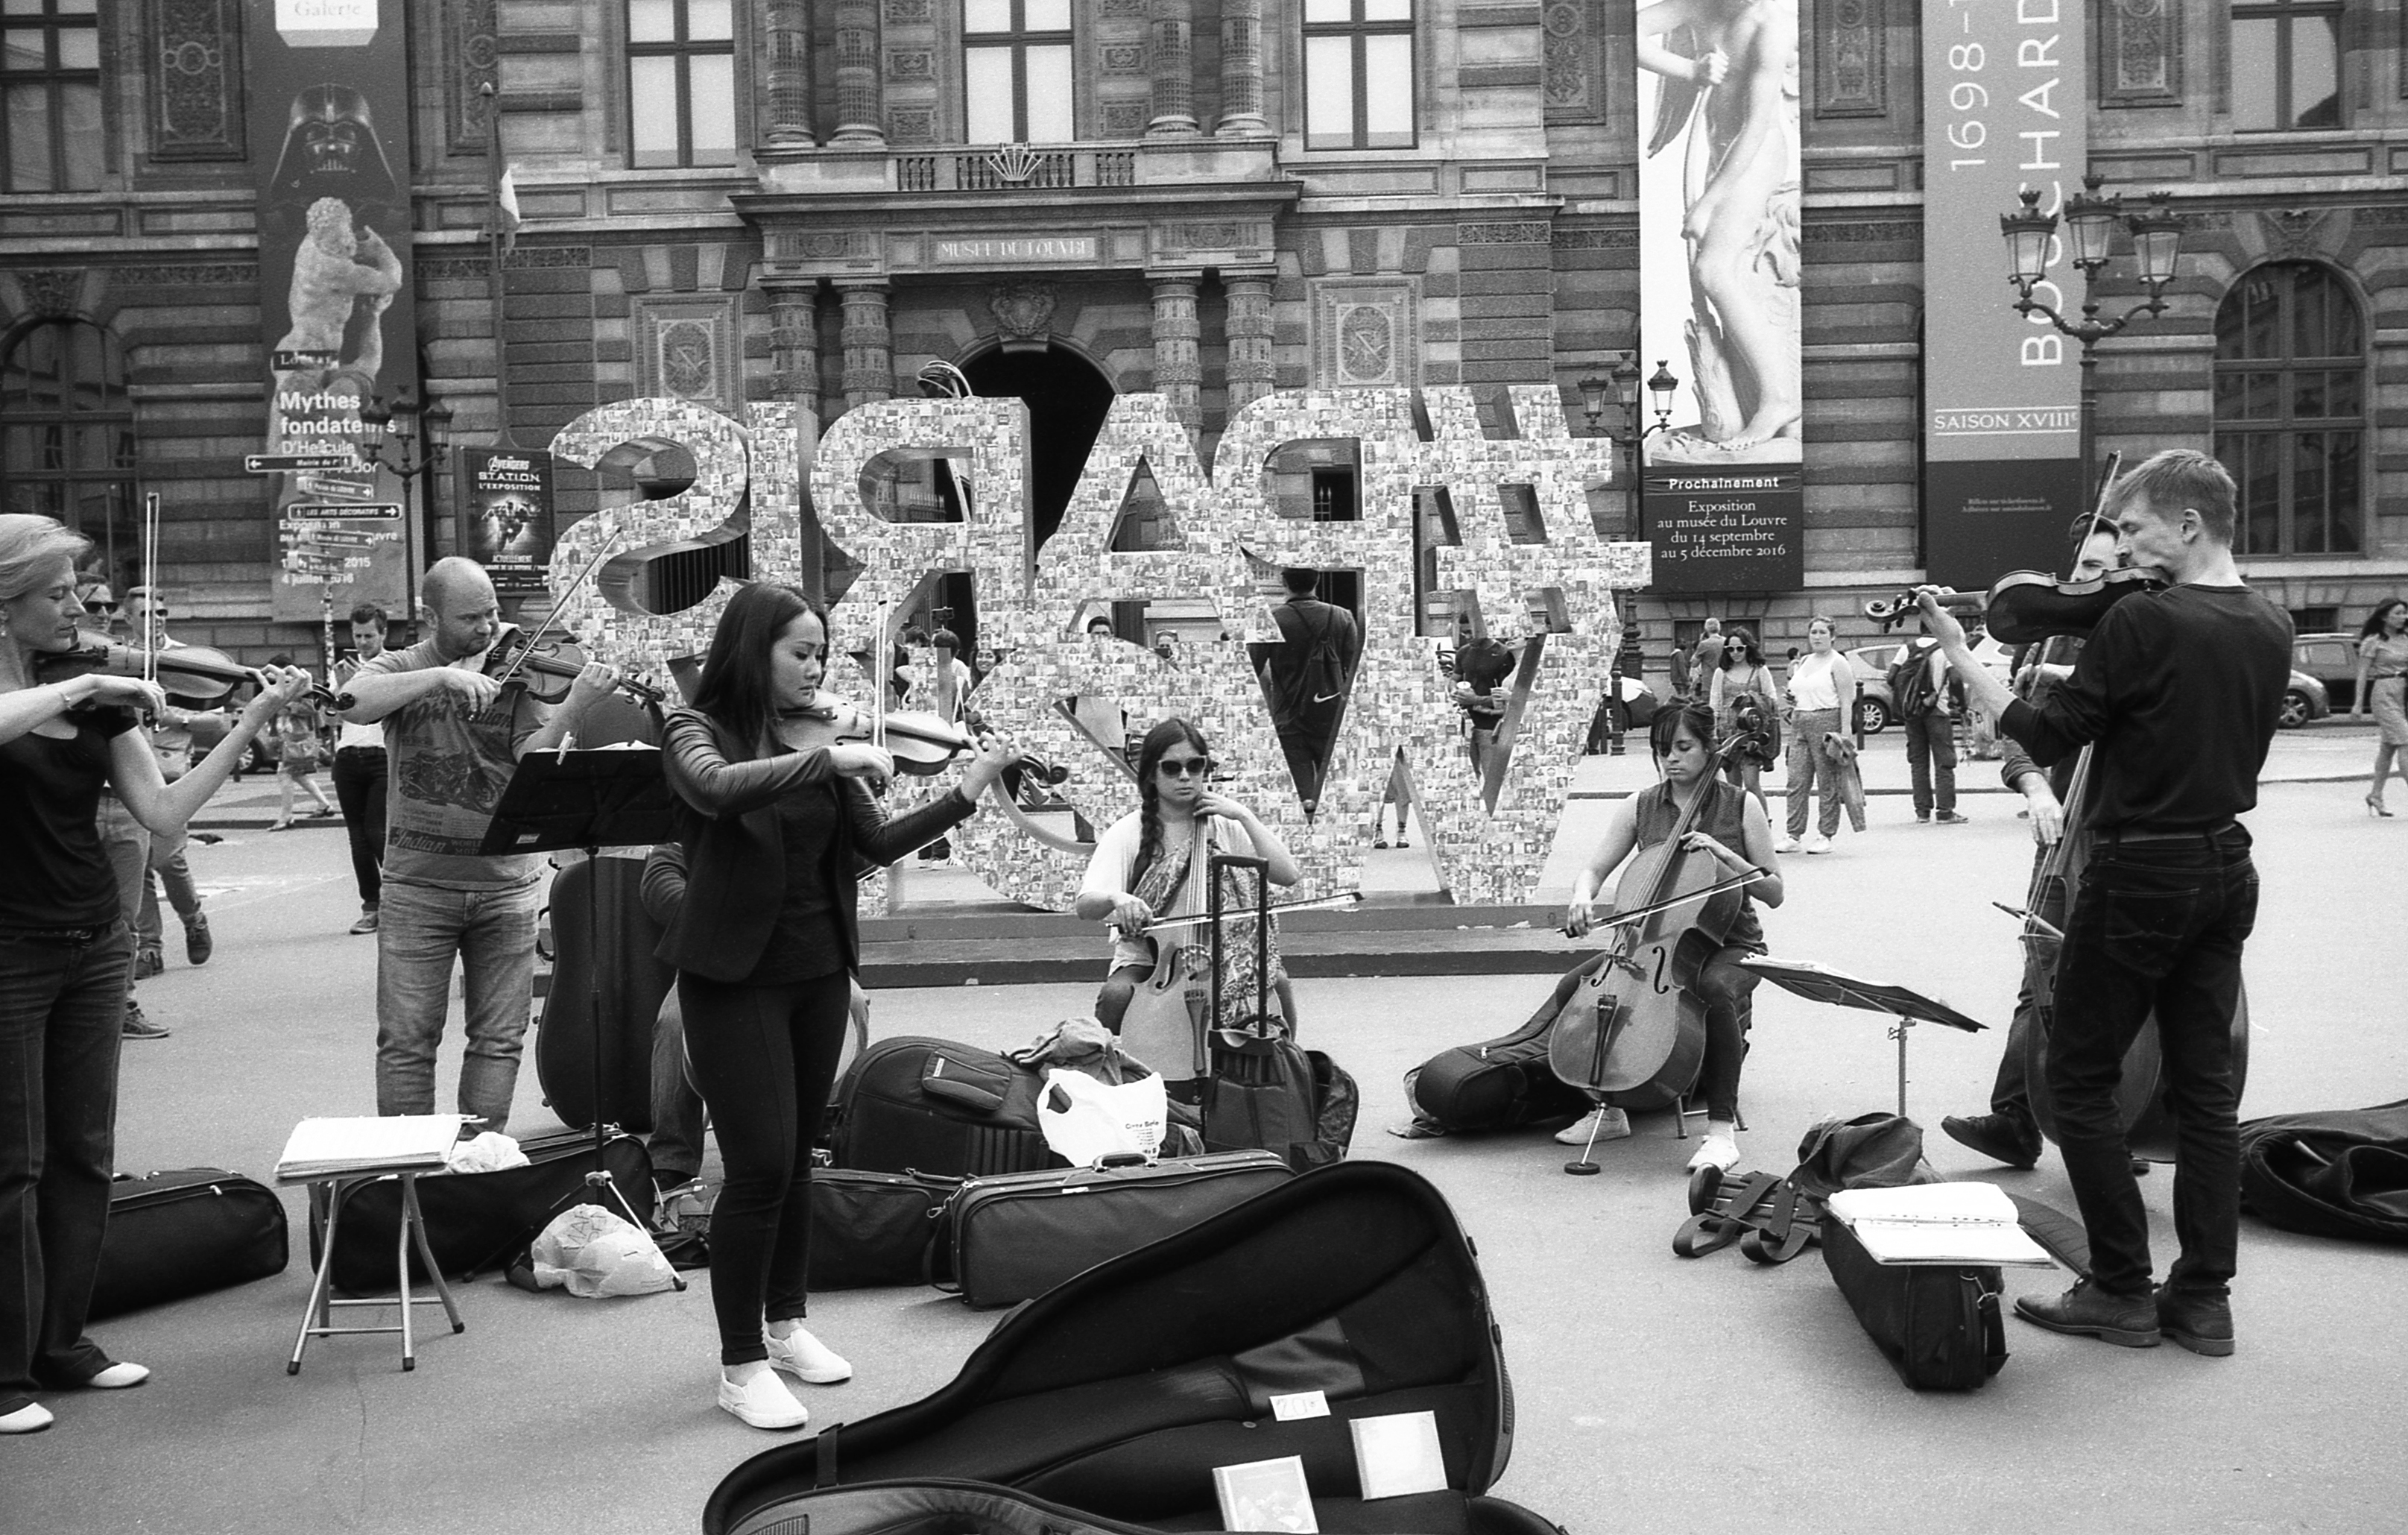 PUBLICADA 3.II.17 Músics tocant al carrer, a París, davant del museu del Louvre, any 2016. Leica M2223